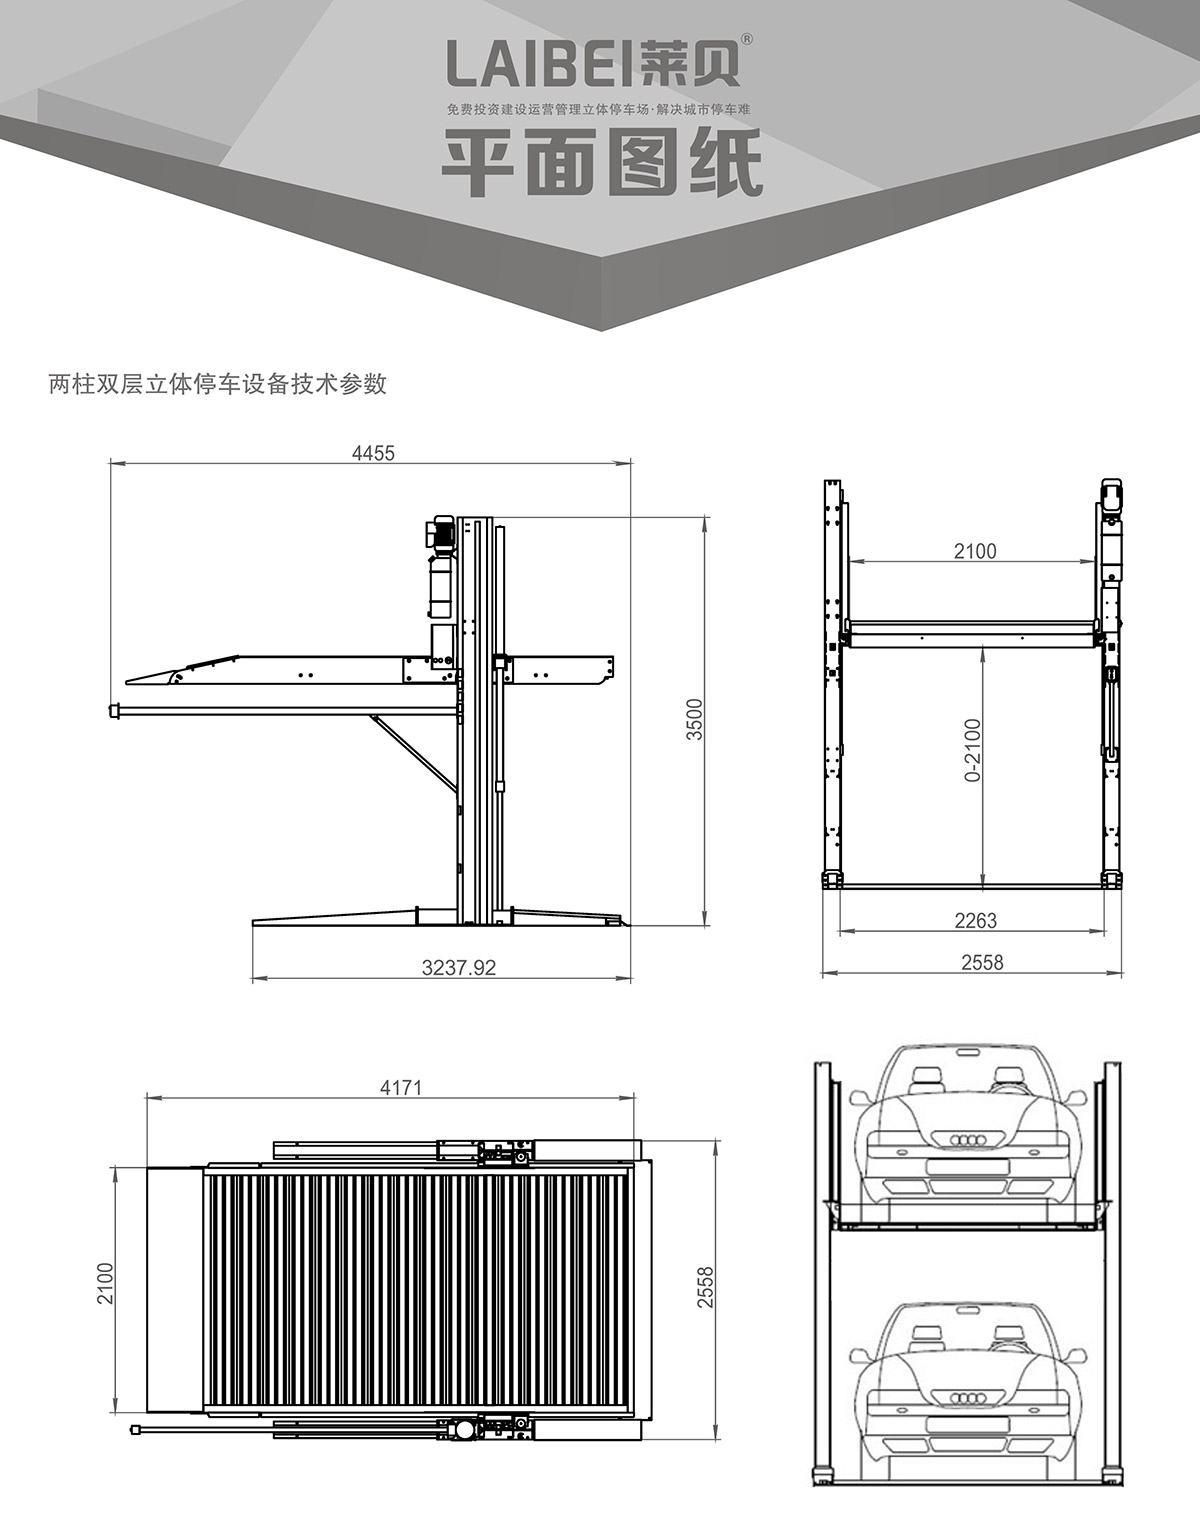 立体车库PJS两柱简易升降立体车库设备平面图纸.jpg